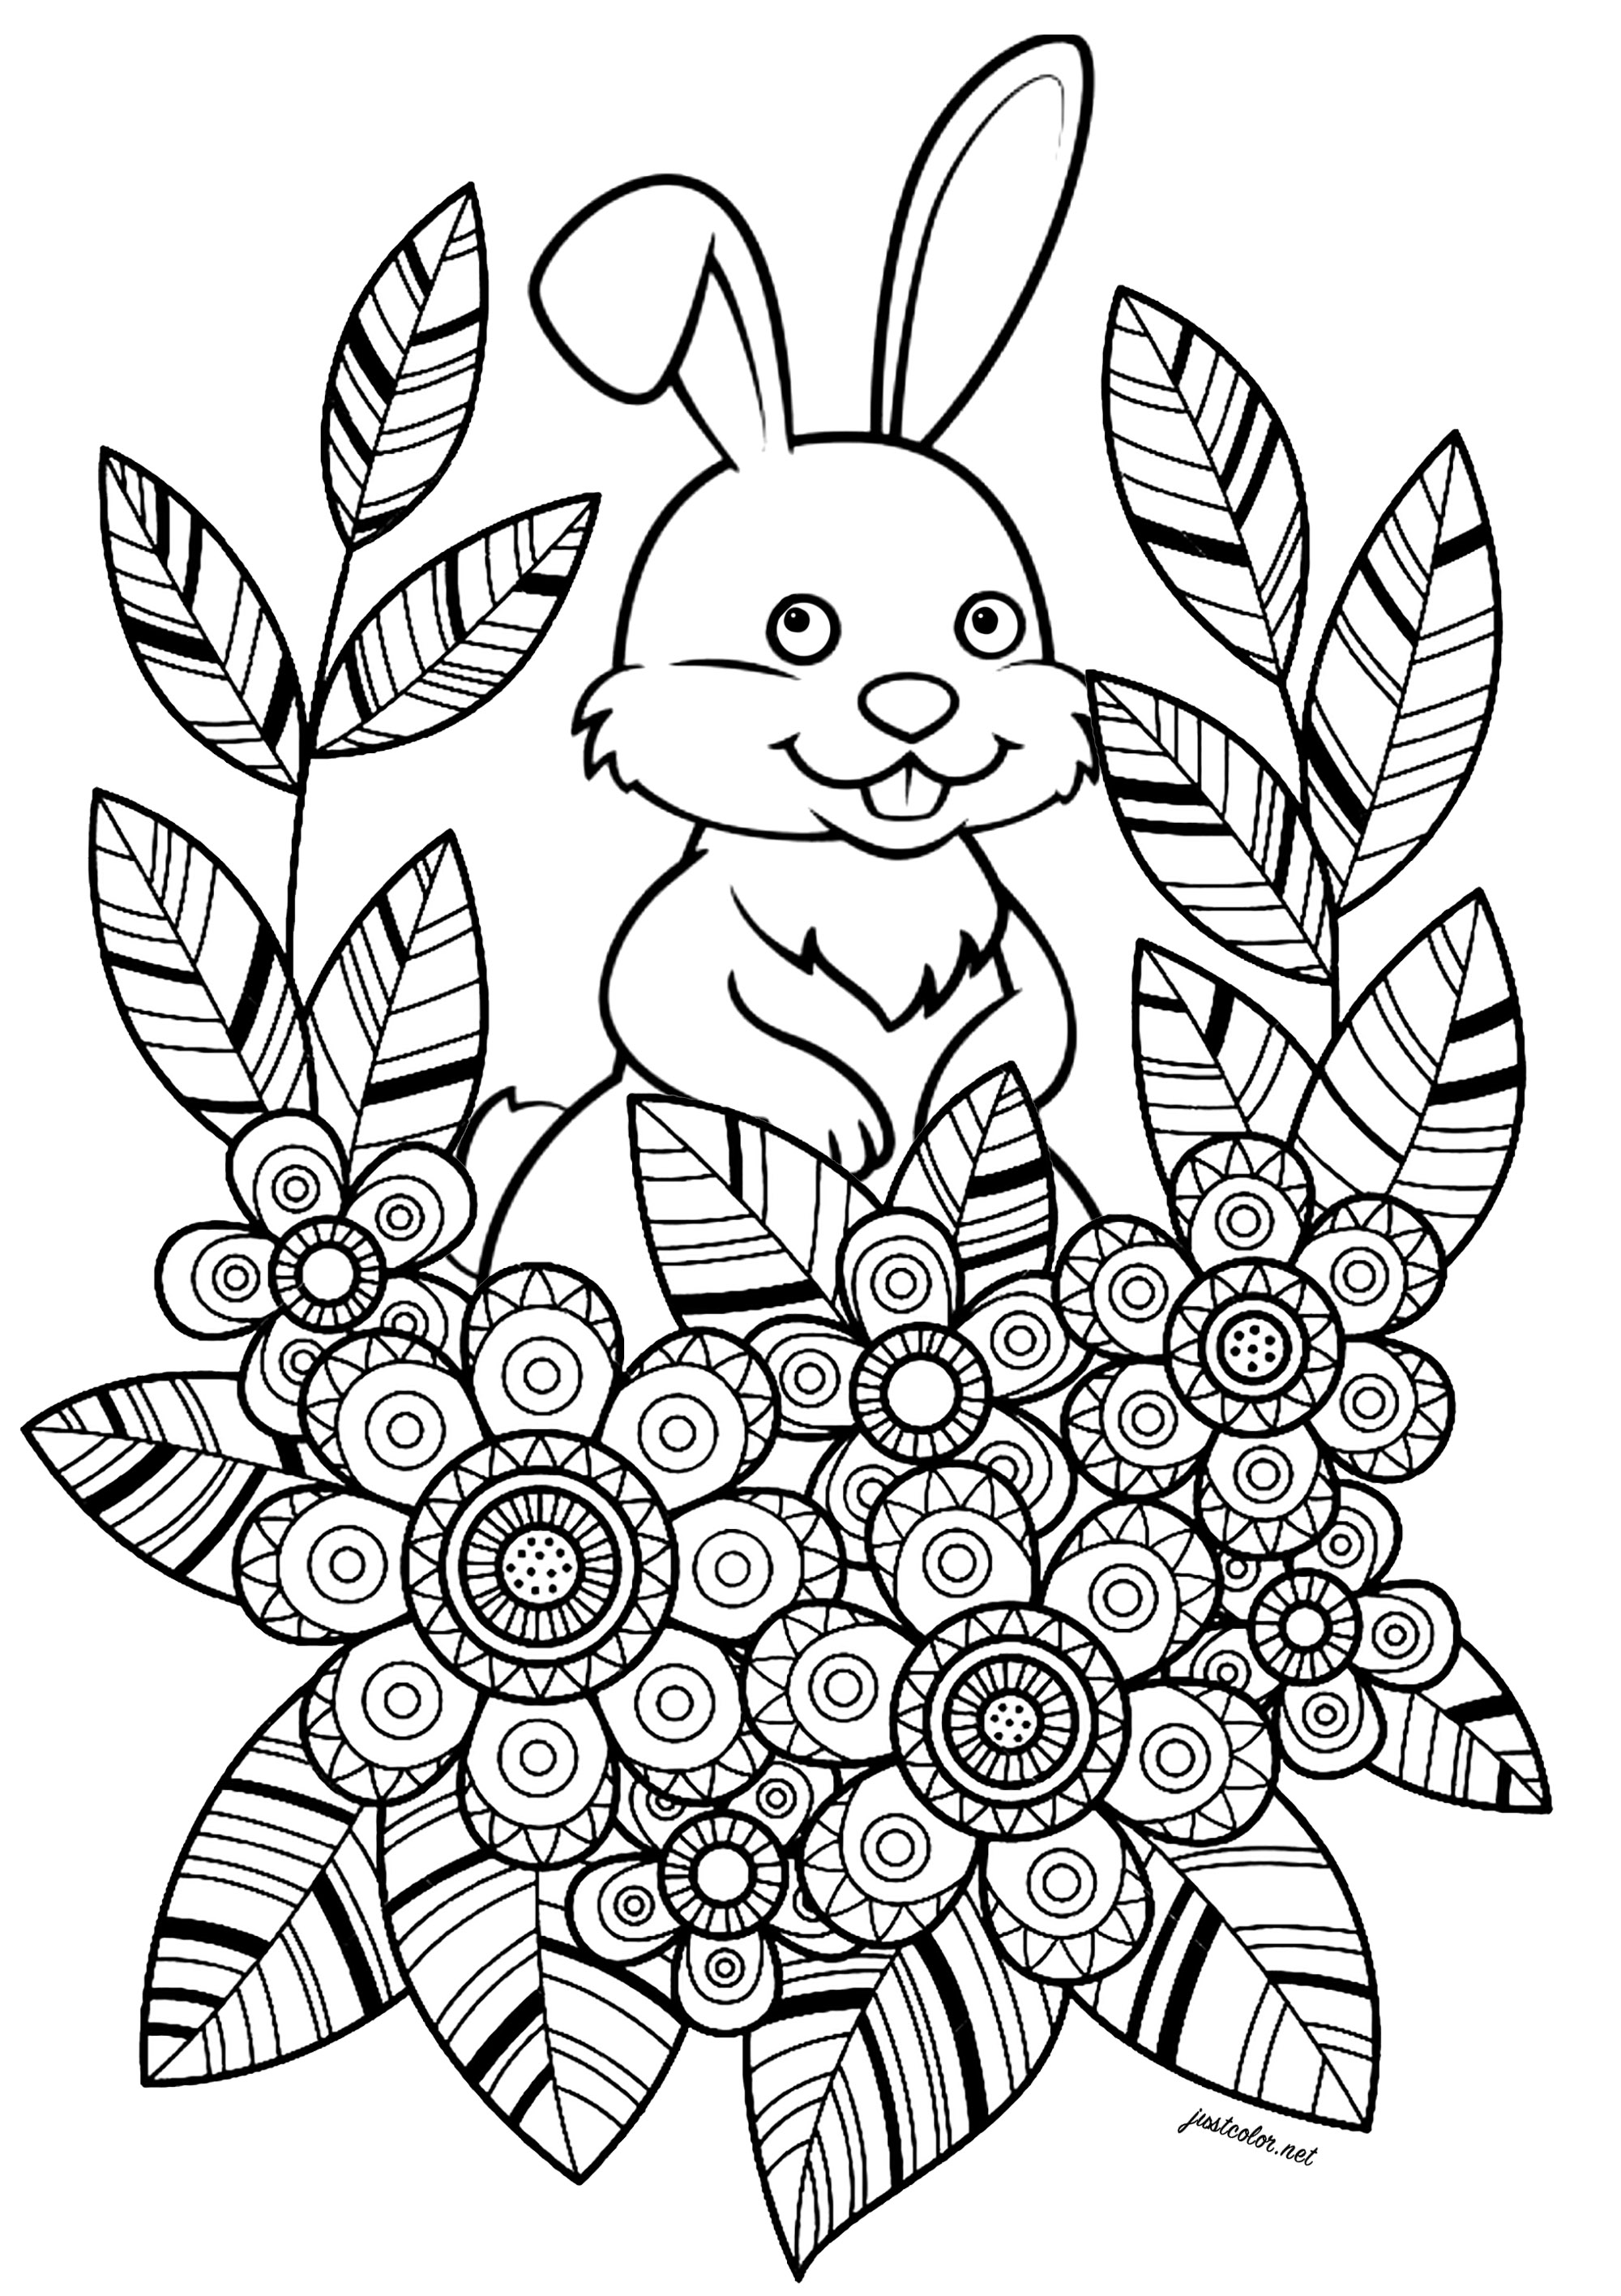 Coelho com flores e folhas num bonito desenho. Esta página para colorir, simples e encantadora, apresenta um coelho branco escondido atrás de flores e folhas. As flores e as folhas estão desenhadas num estilo muito fácil de colorir, com áreas bem definidas e bonitos padrões.